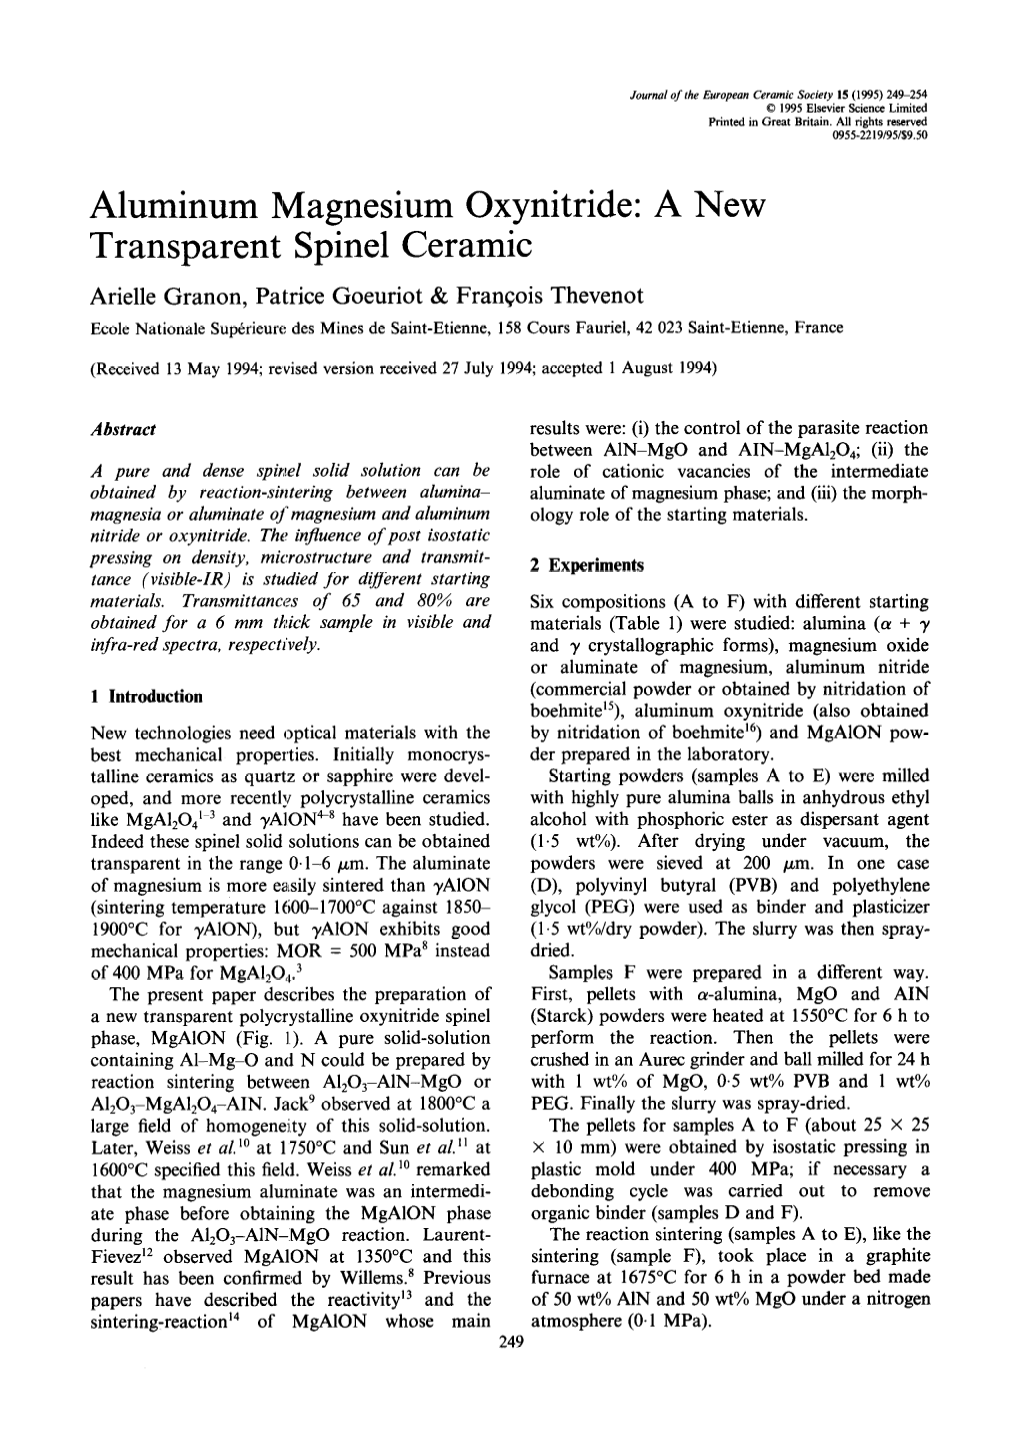 Aluminum Magnesium Oxynitride: a New Transparent Spine1 Ceramic